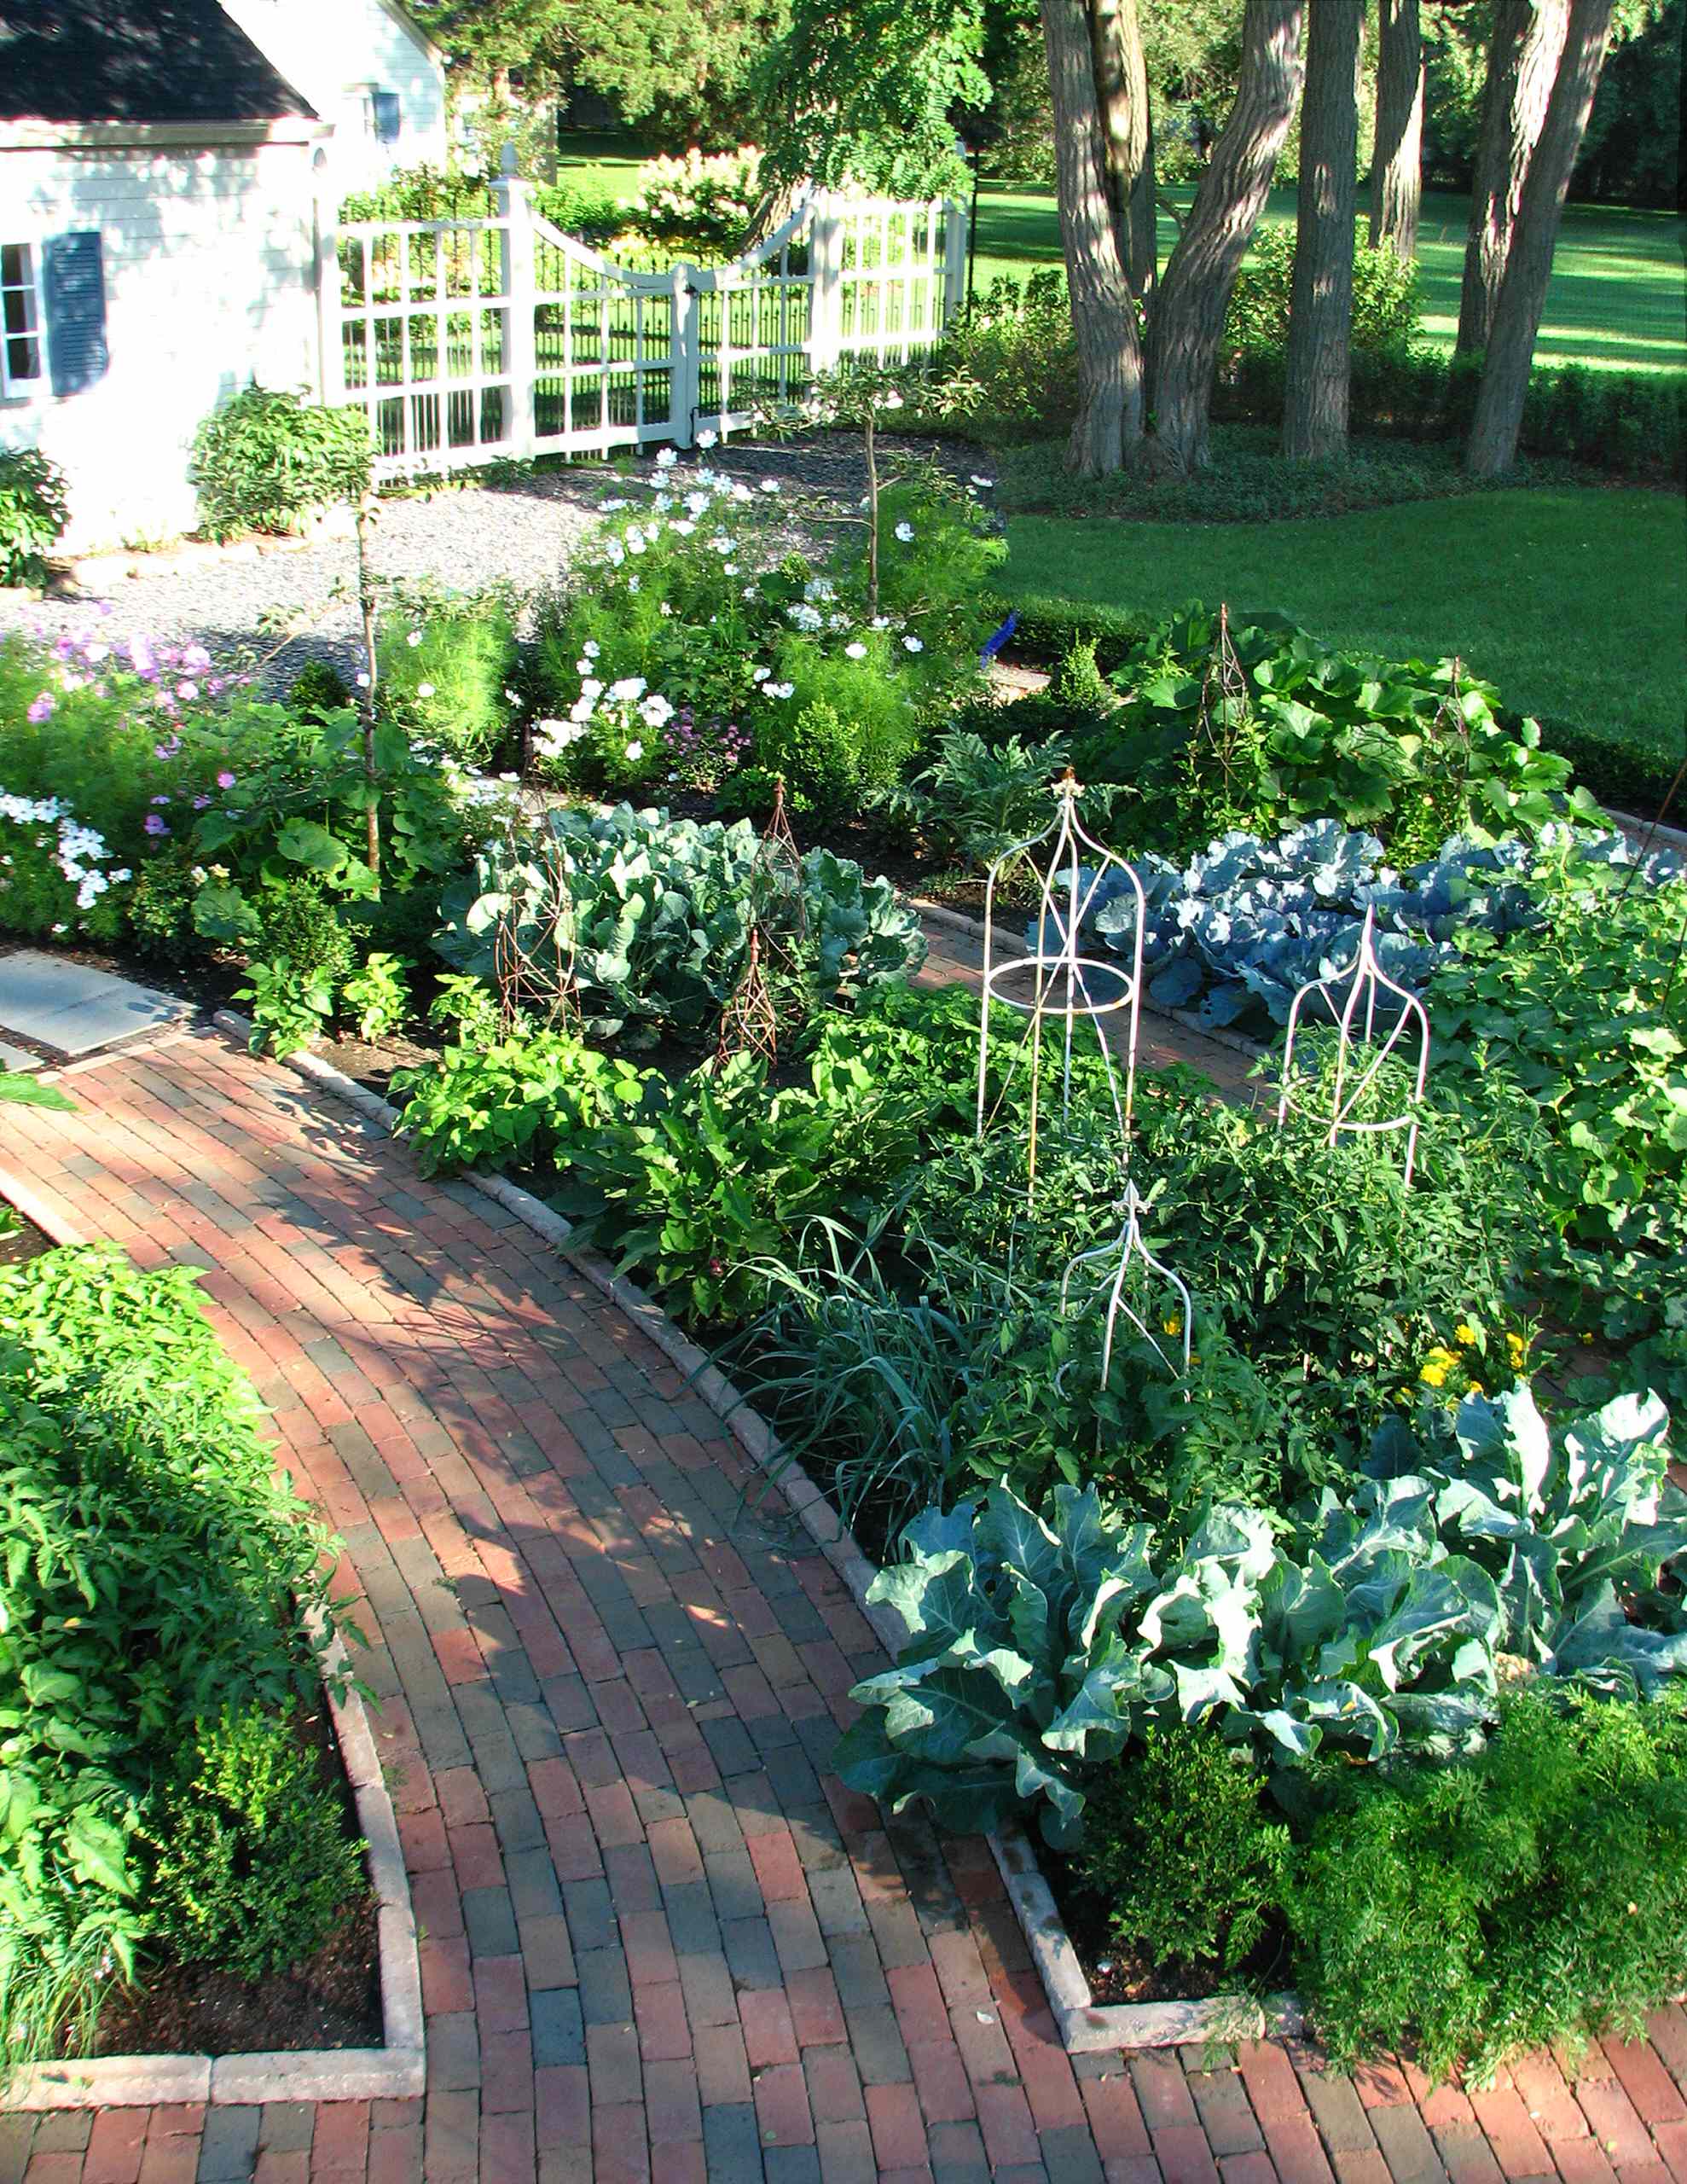 Fanciful DIY Kitchen-Garden Container Ideas - FineGardening